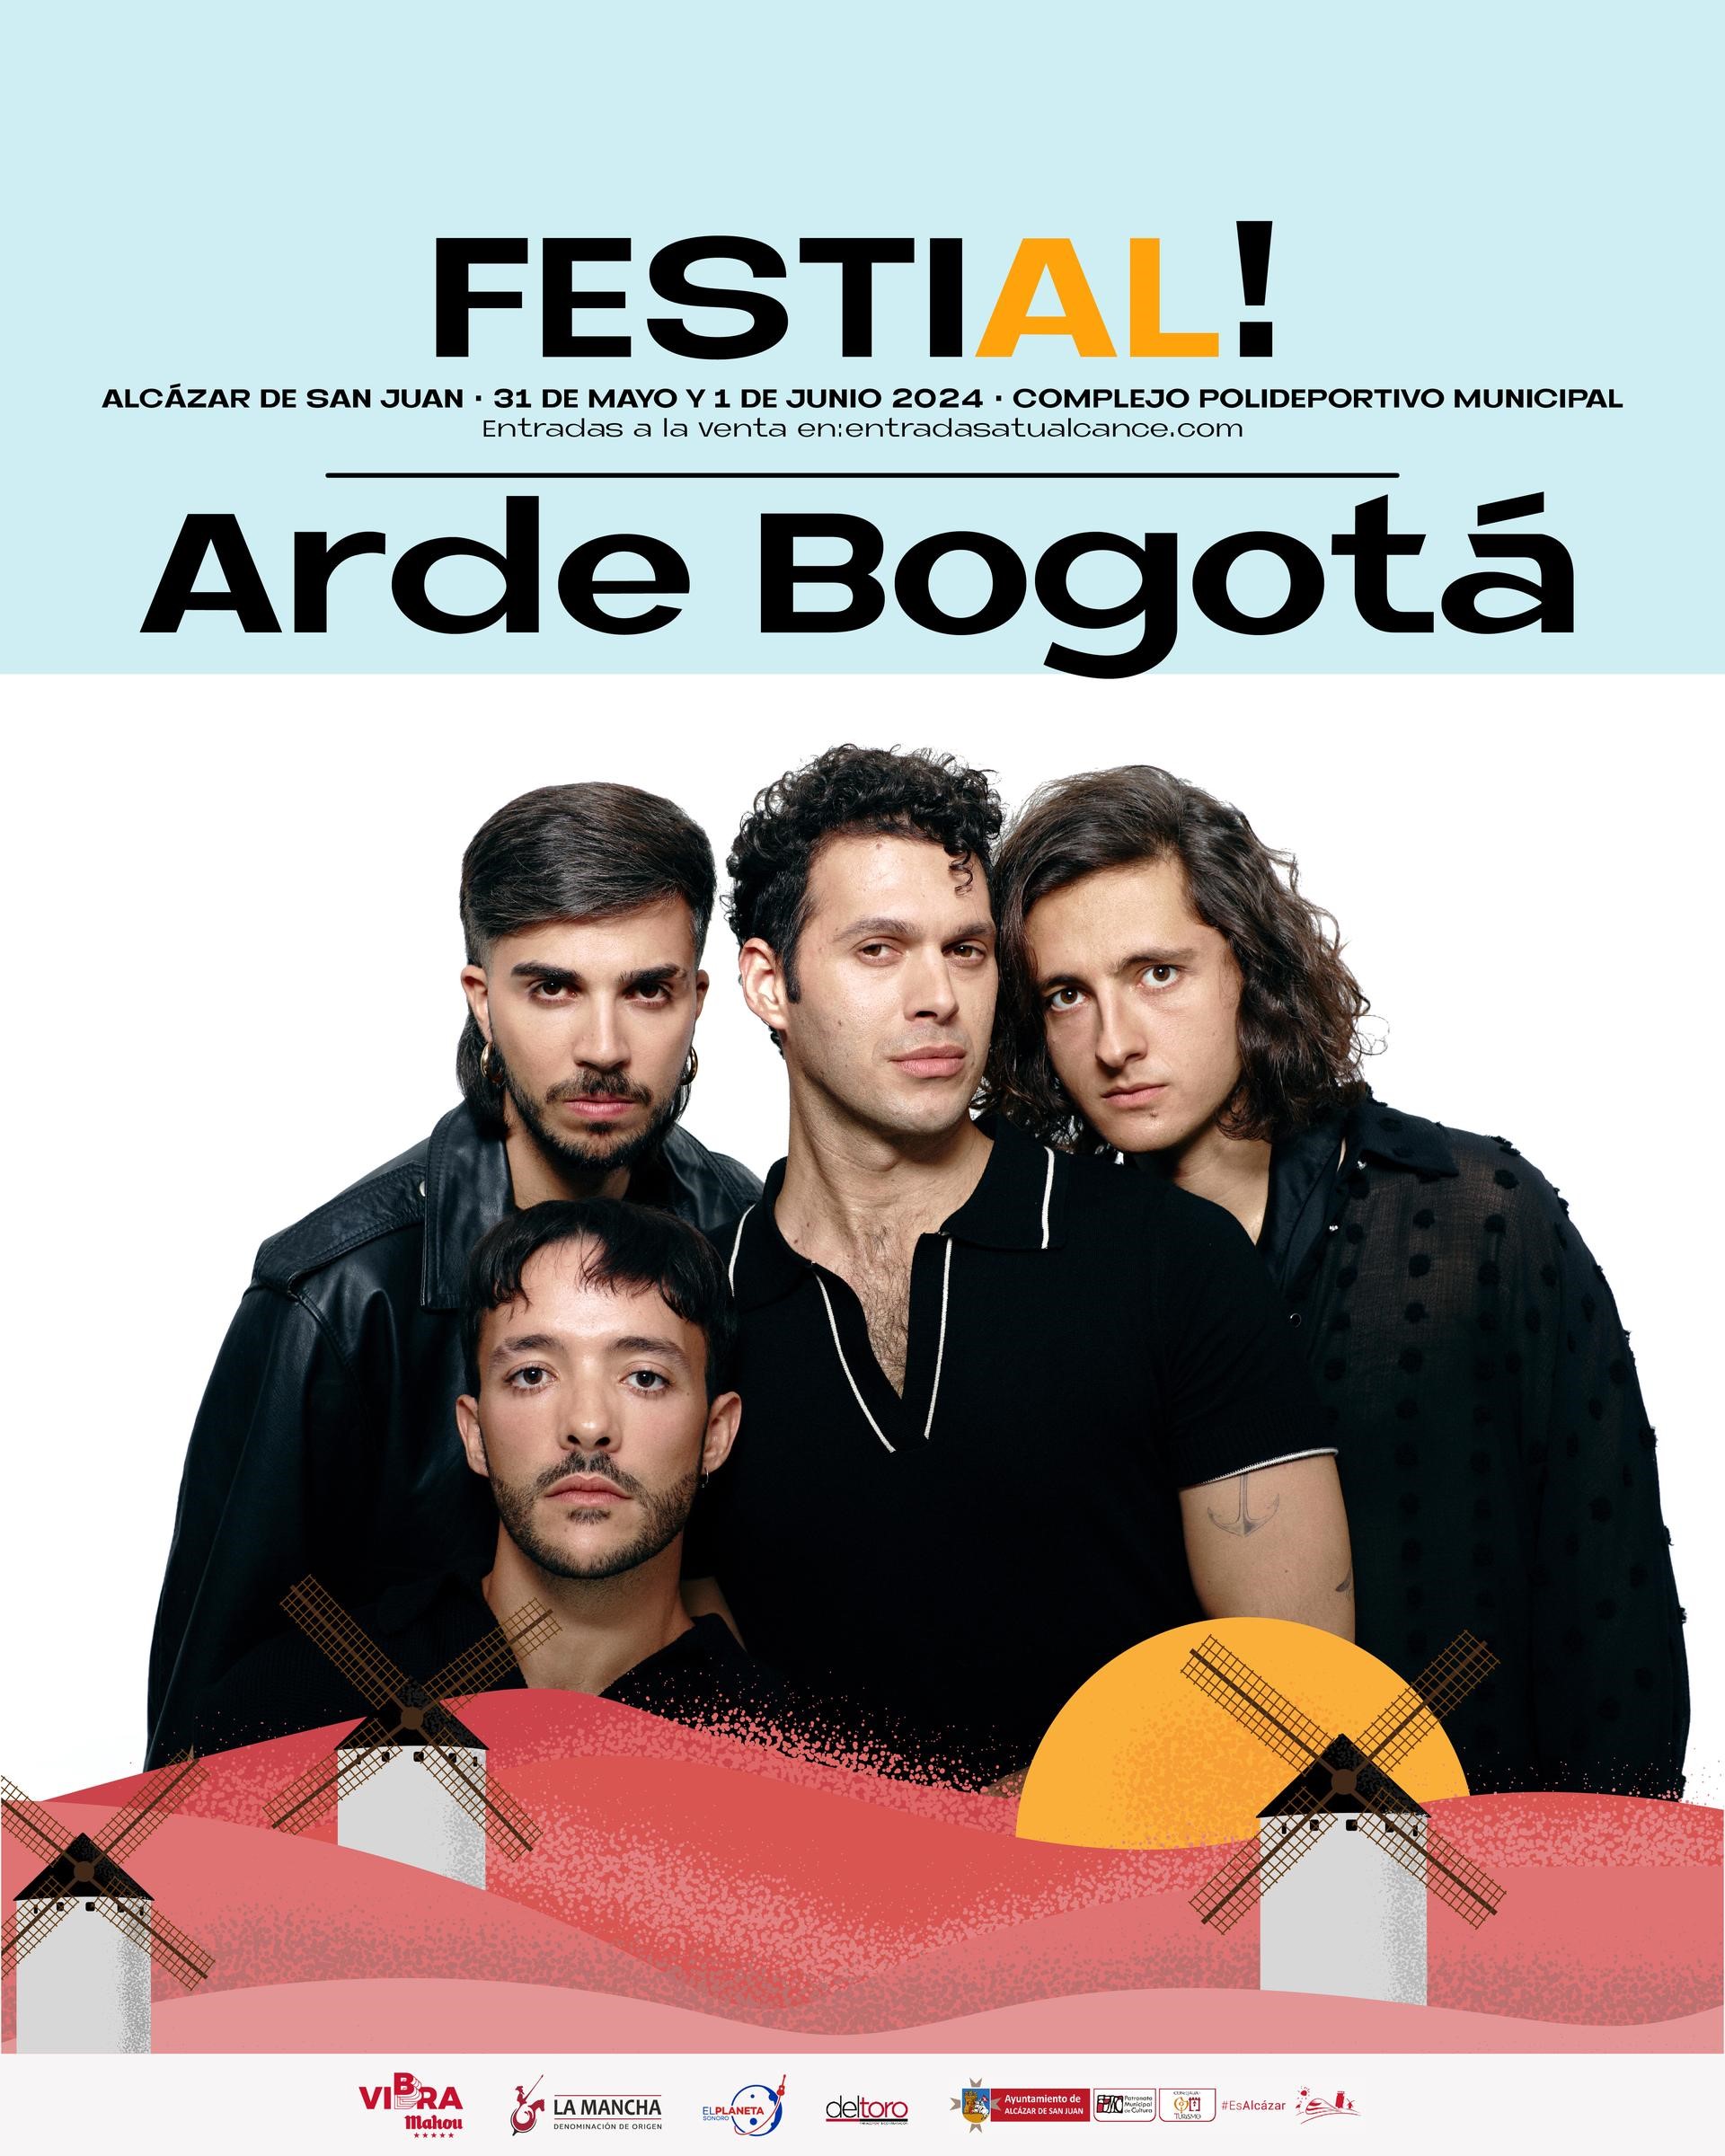 Arde Bogotá, broche de oro de la primera edición de Festial! 